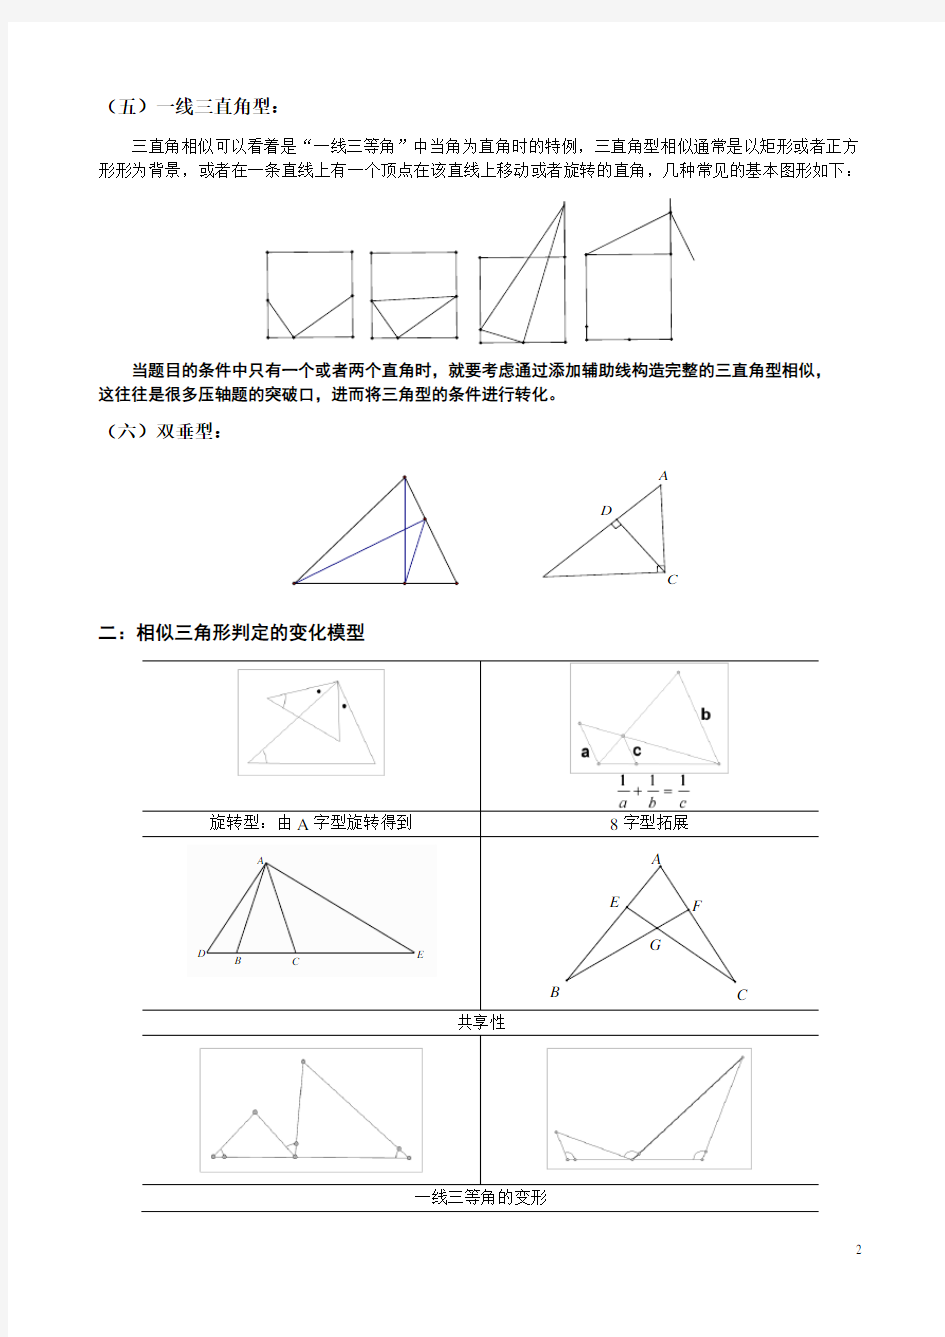 相似三角形典型模型及例题